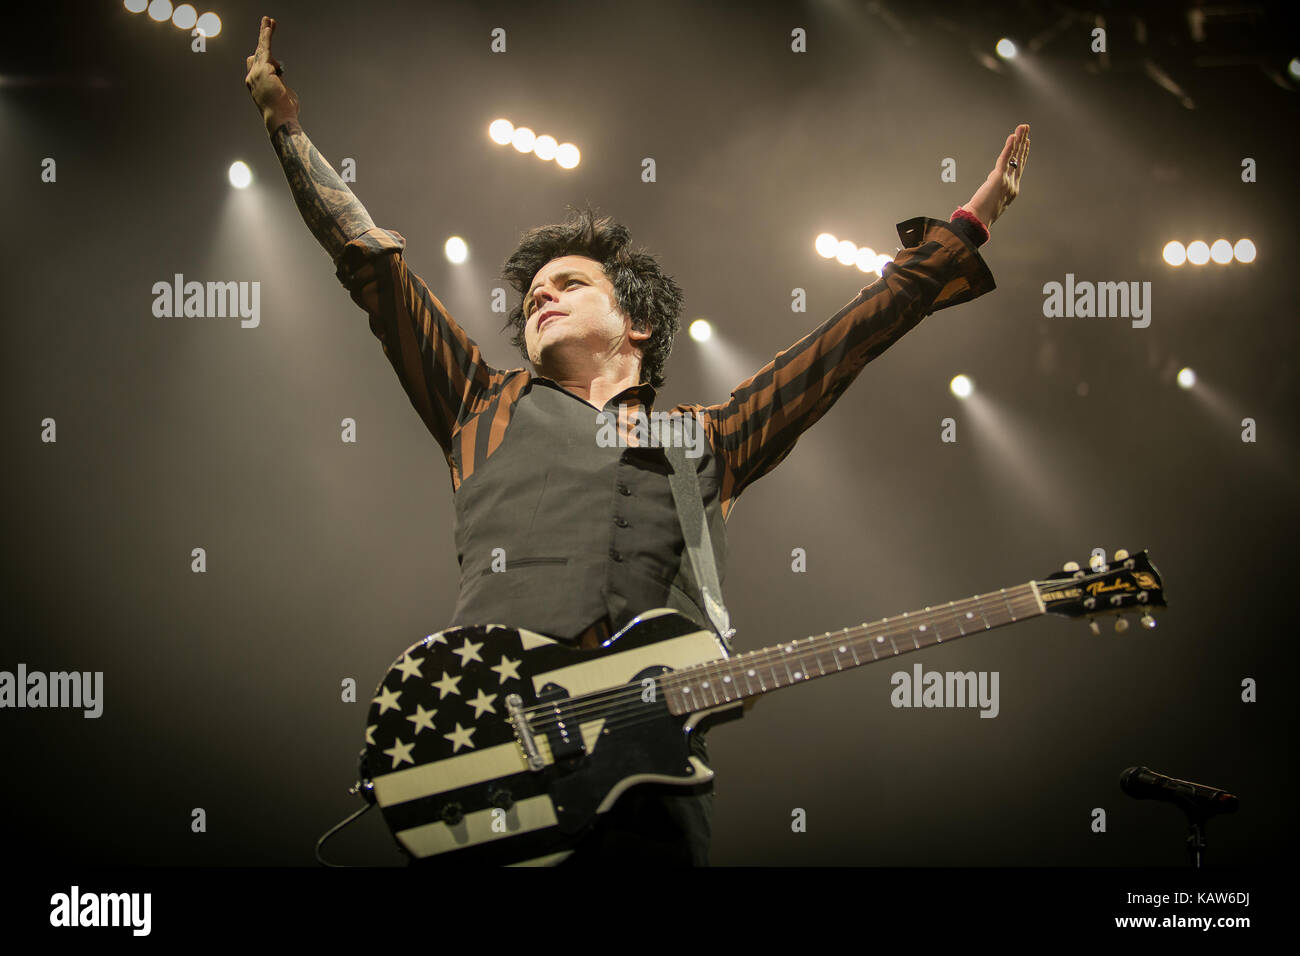 Le groupe punk rock américain Green Day effectue un concert live à Oslo Spektrum. Ici le chanteur et musicien Billie Joe Armstrong est vu sur scène. La Norvège, 25/01 2017. Banque D'Images